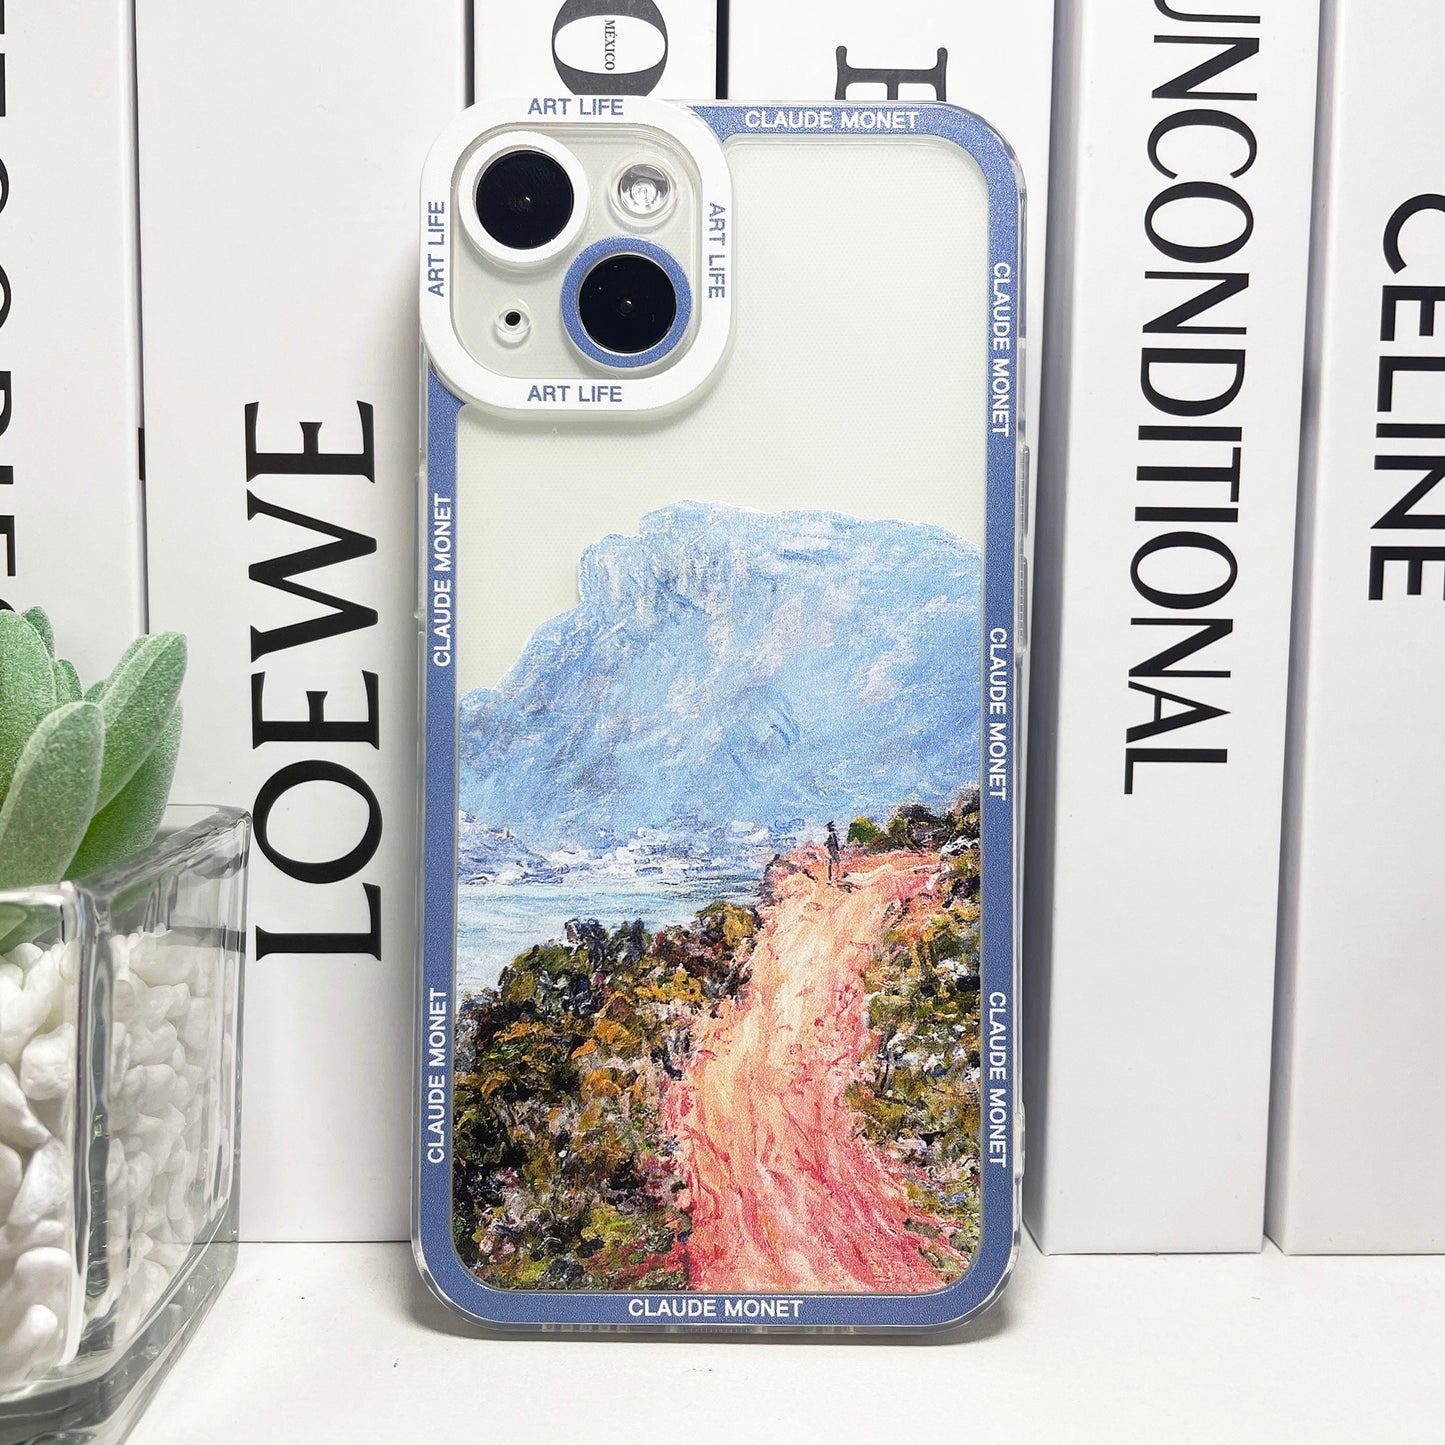 Claude Monet Aesthetic iPhone Cases